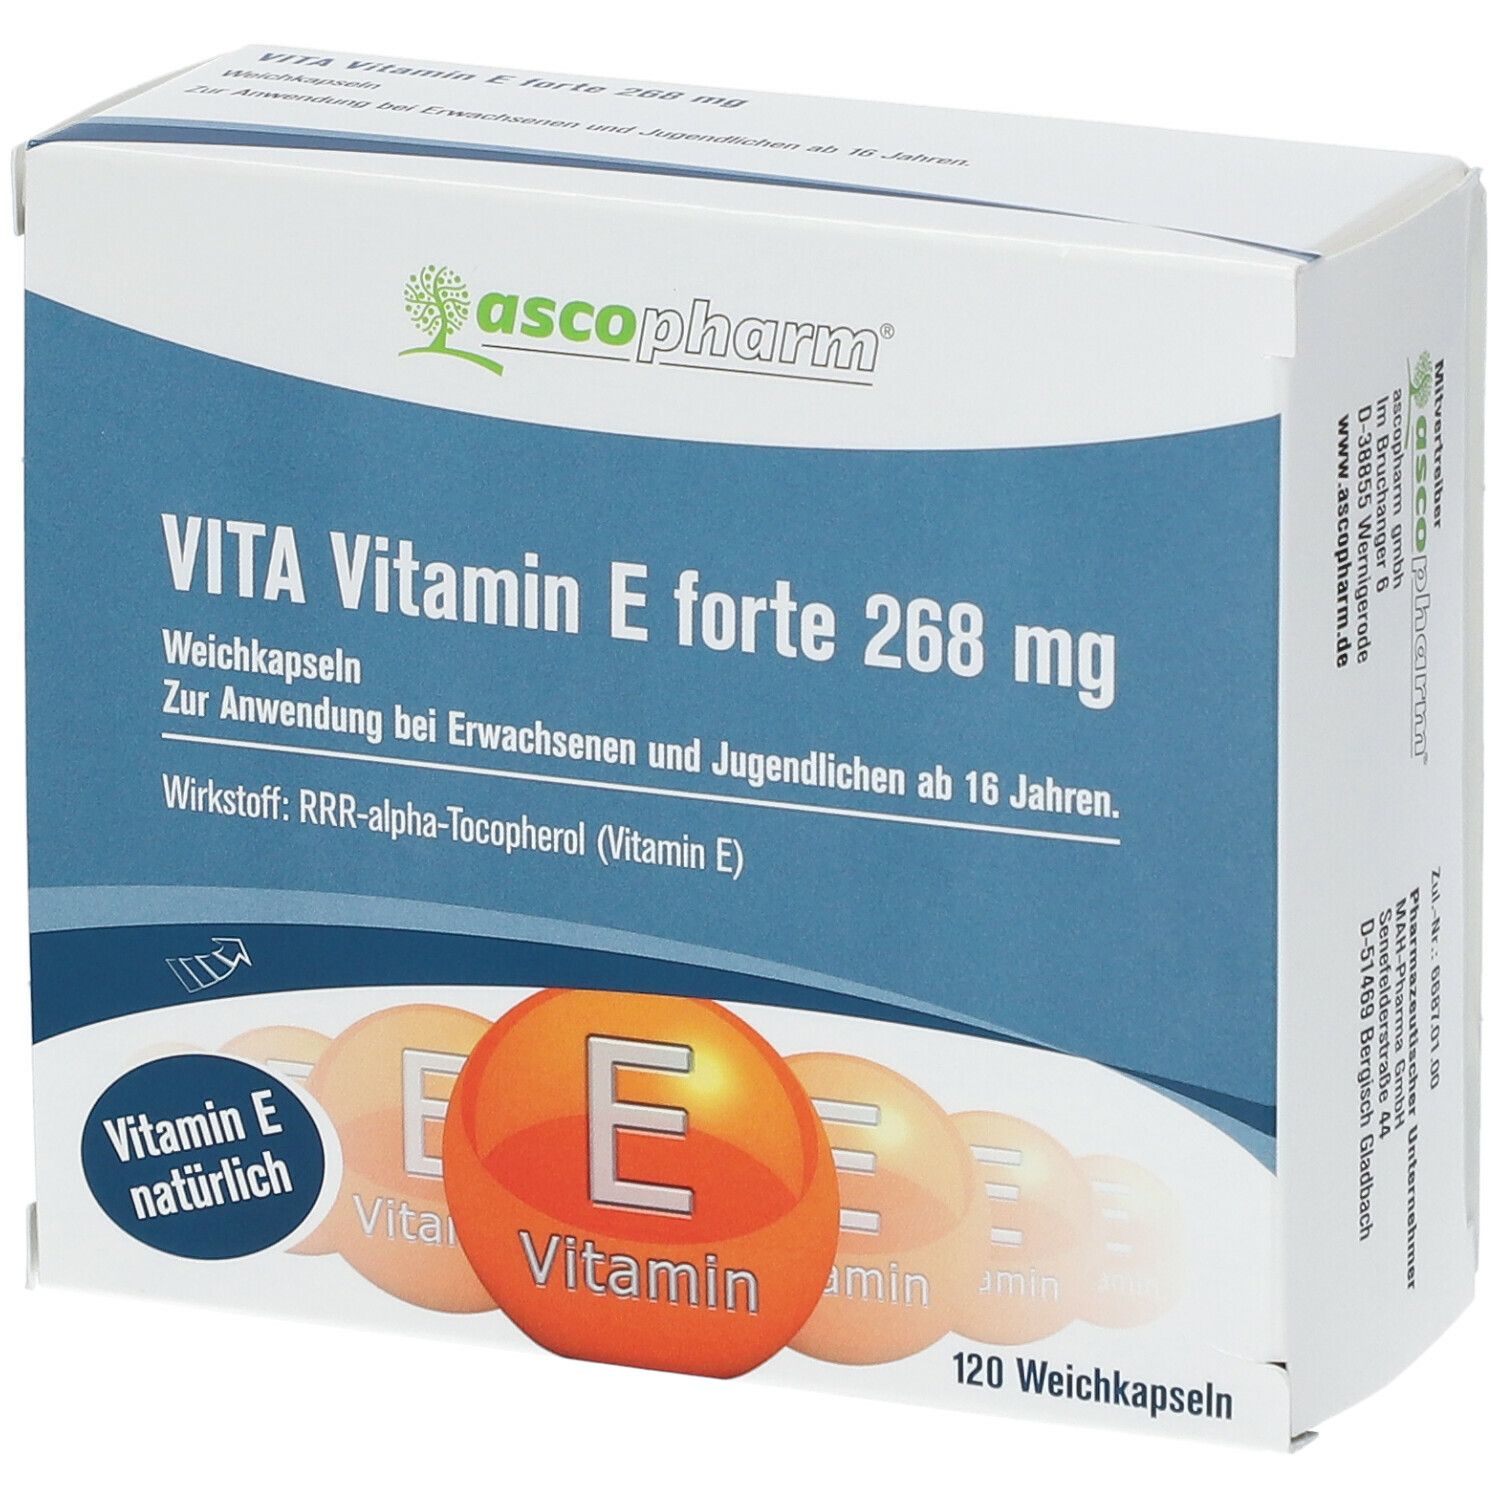 ascopharm® Vita Vitamin E forte 268 mg